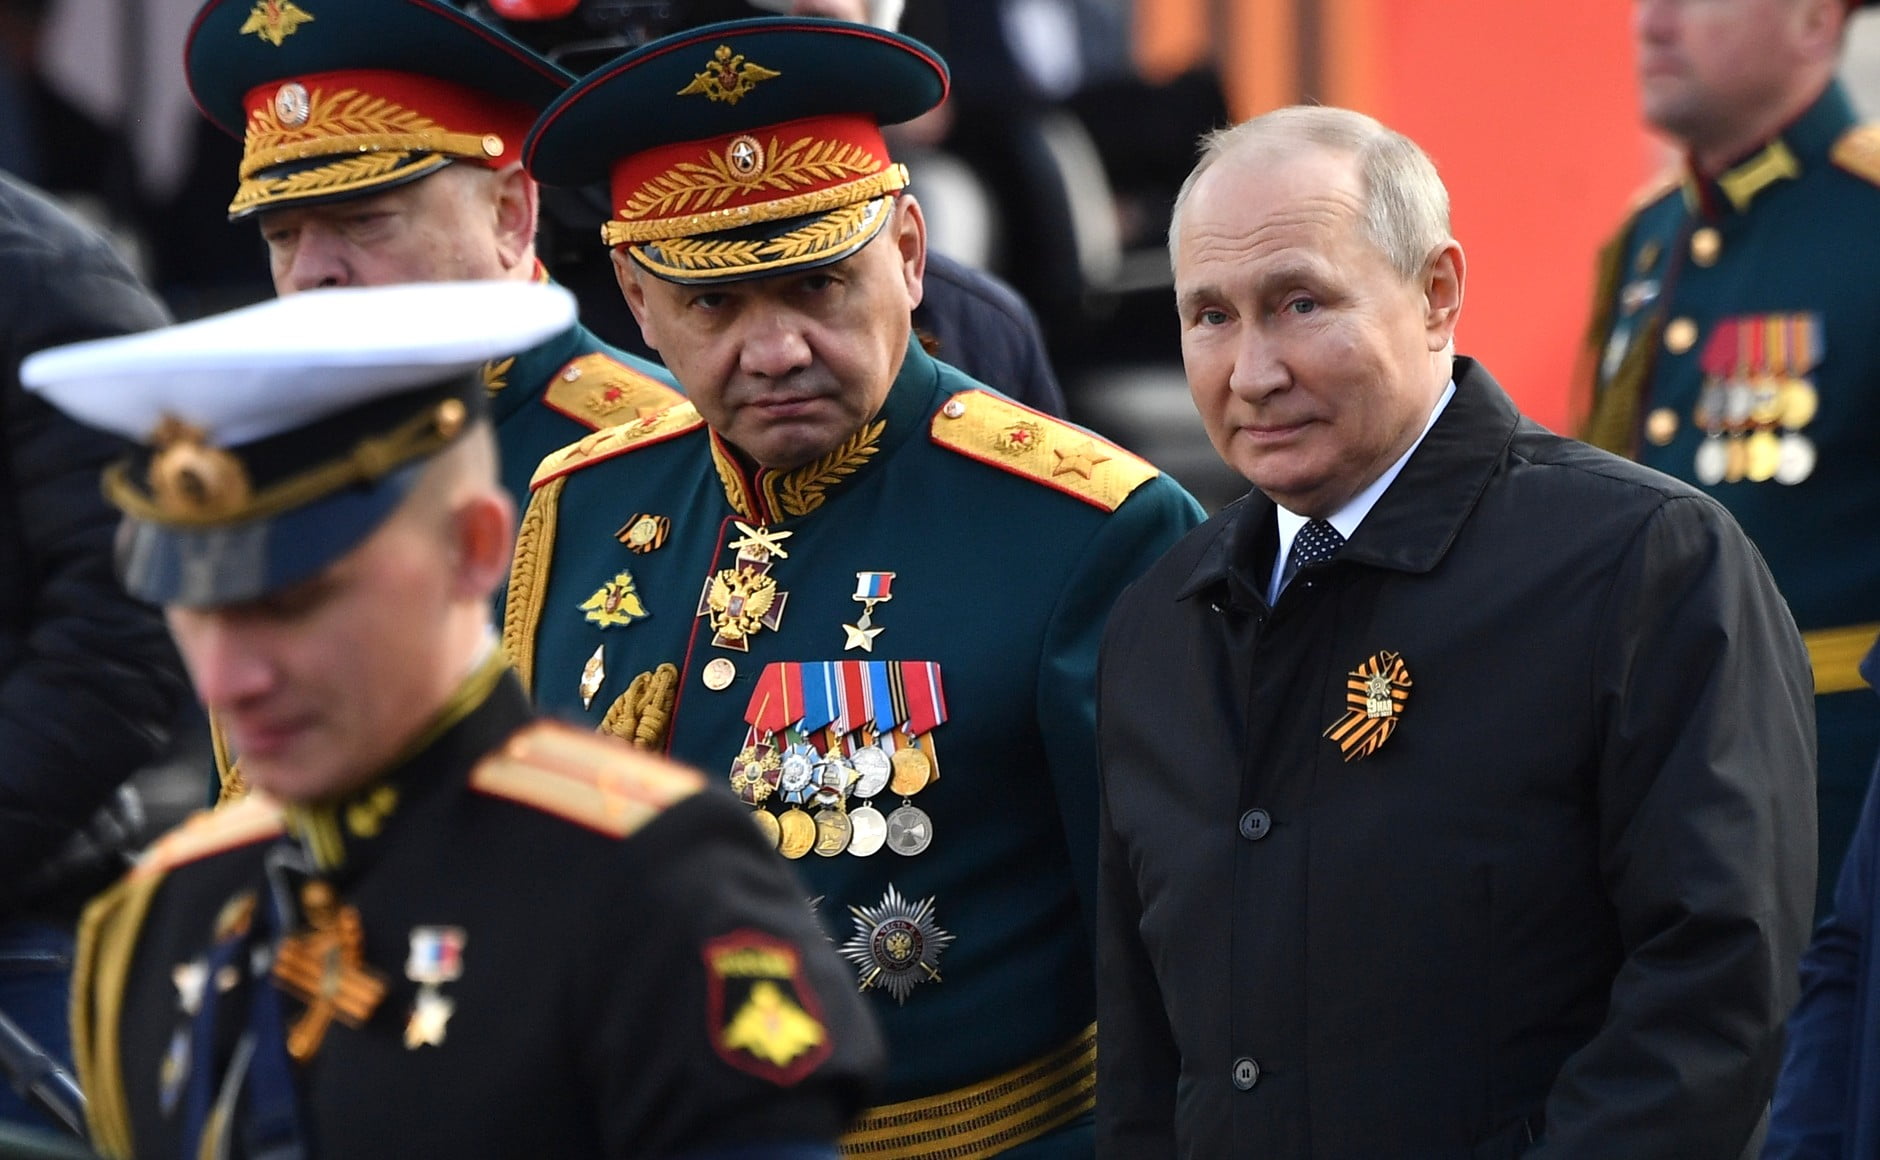 Armata sceleraților lui Putin: corupție, minciuni